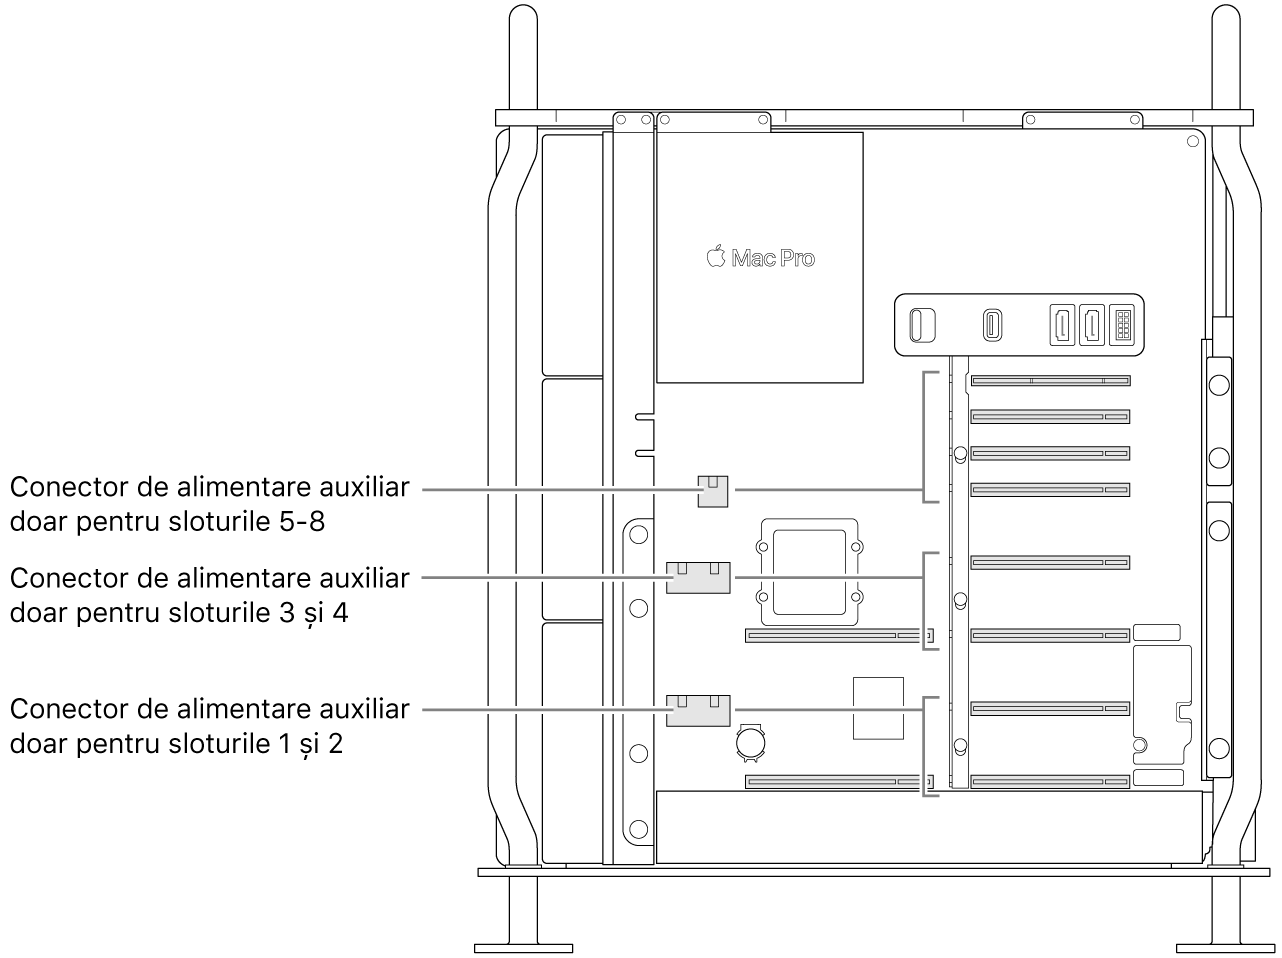 Partea laterală a Mac Pro-ului deschisă, cu explicații care arată care sloturi sunt asociate cu anumiți conectori auxiliari de alimentare.